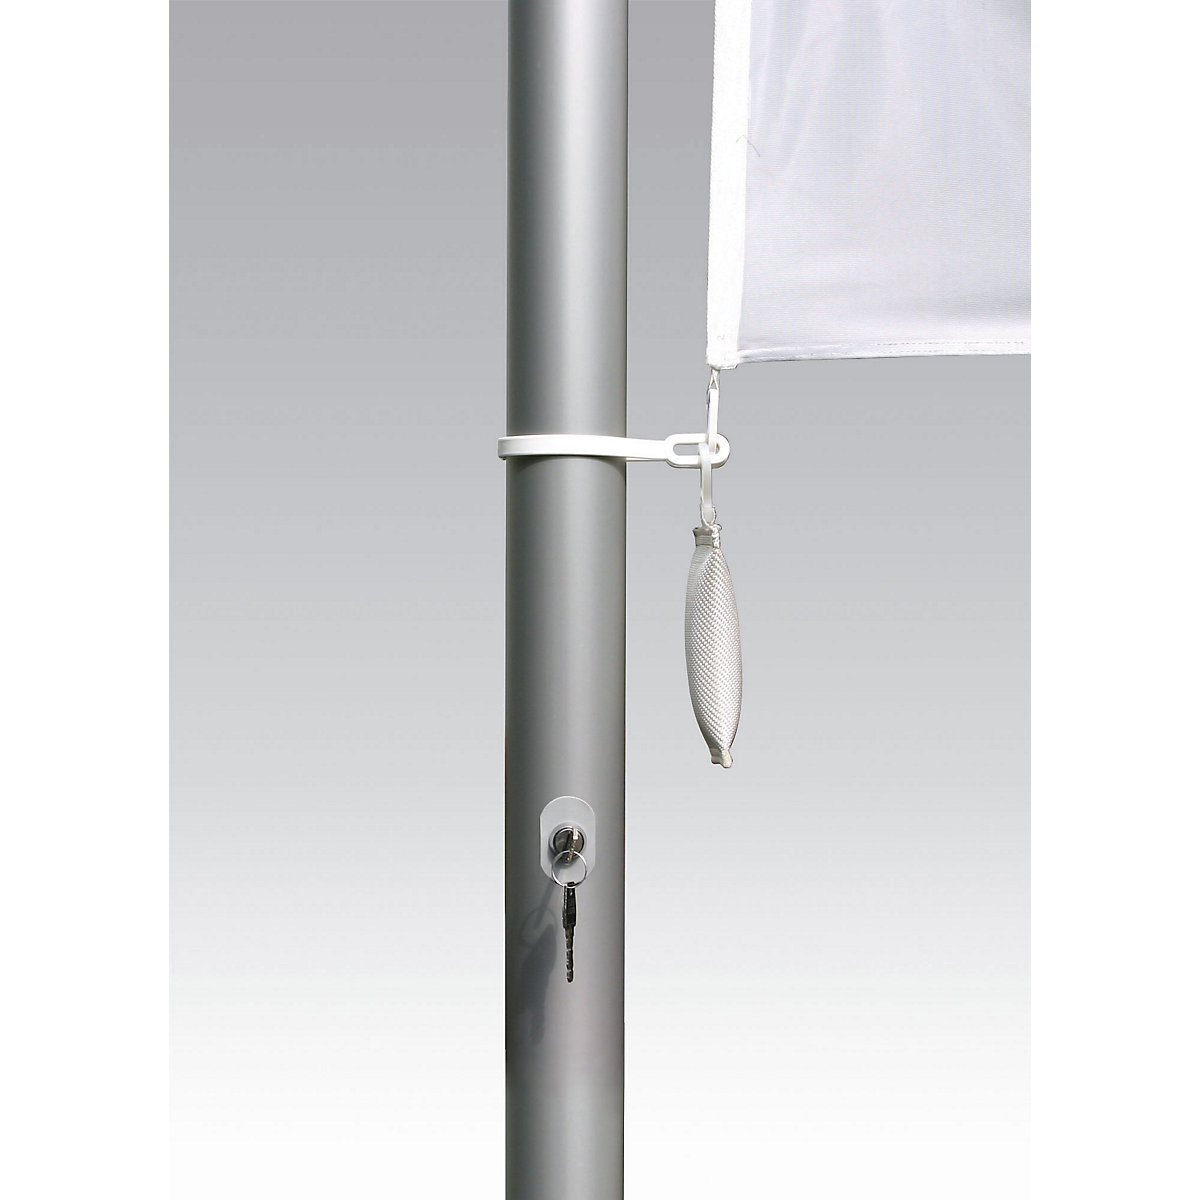 PIRAT aluminium flag pole – Mannus (Product illustration 2)-1